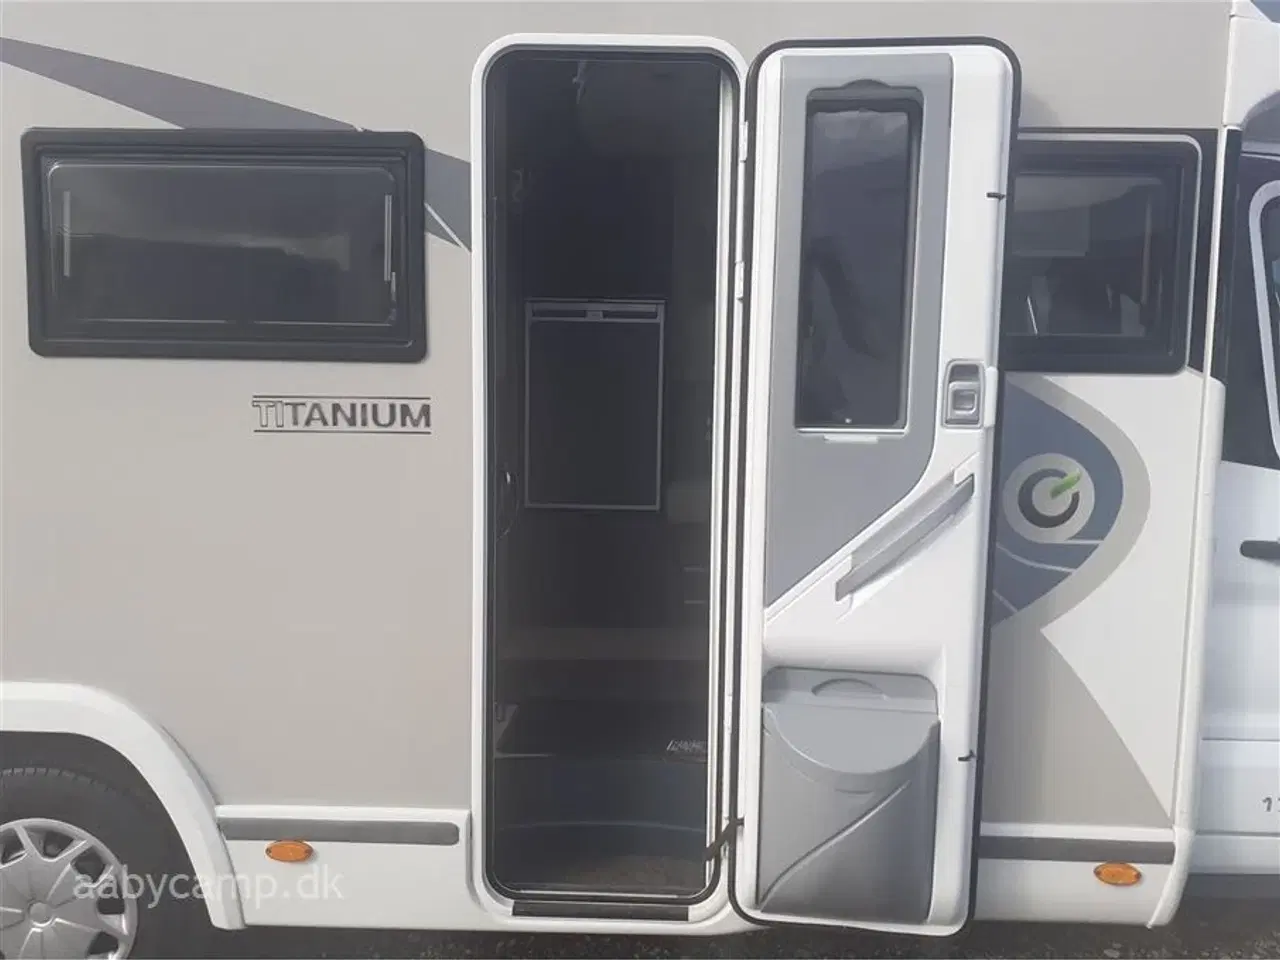 Billede 5 - 2019 - Chausson Welcome Titanium 767   Automatgear.solceller. tv. kompressor køleskab.